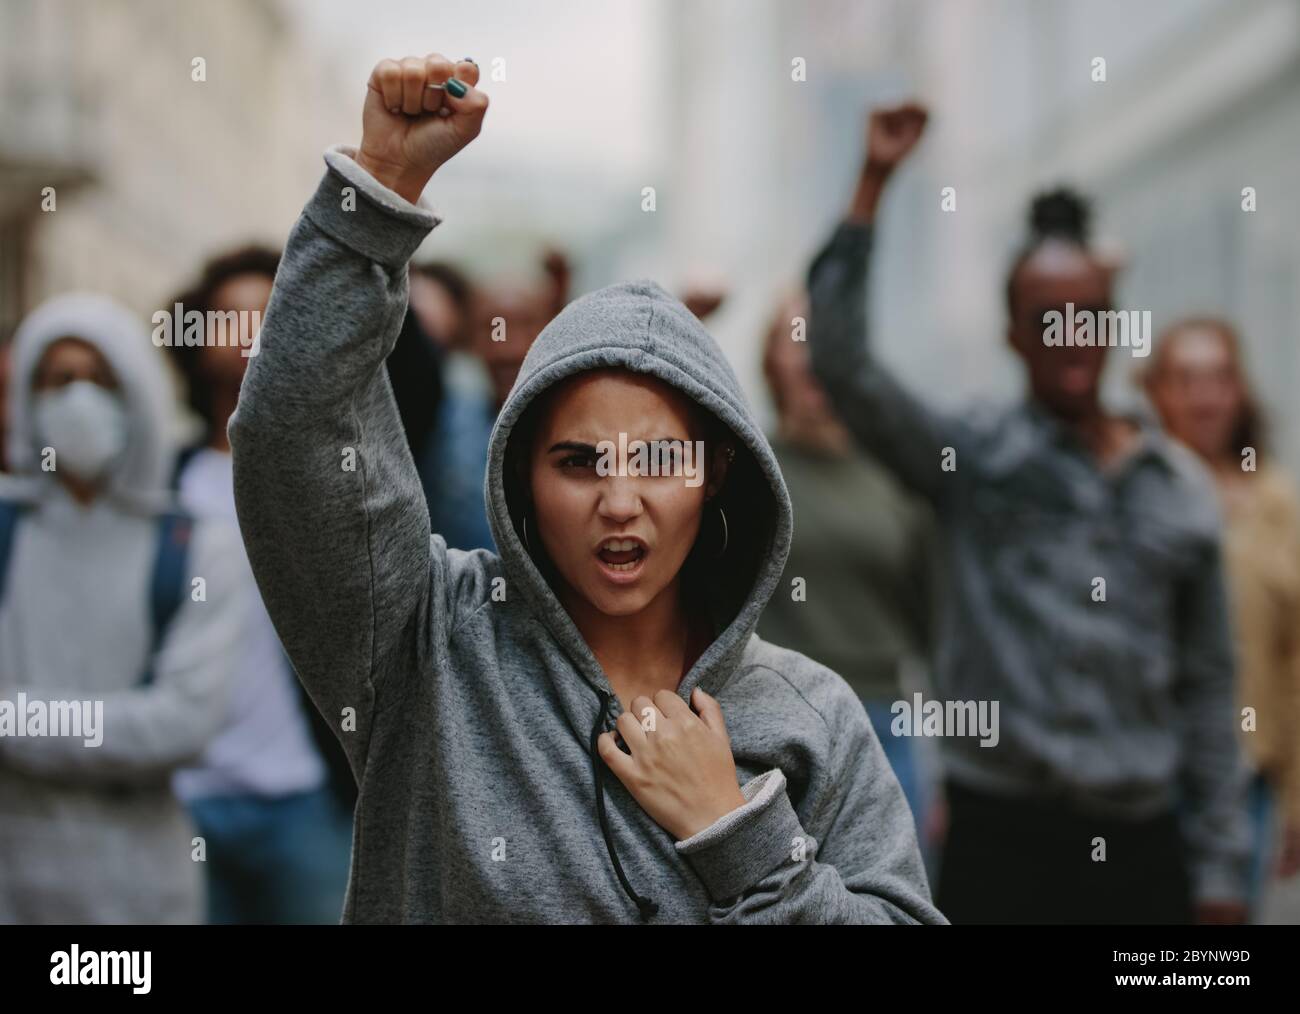 Gruppe von Aktivisten, die in einem protestmarsch Slogans geben. Jugendliche protestieren für den Schutz der Bürgerrechte. Stockfoto